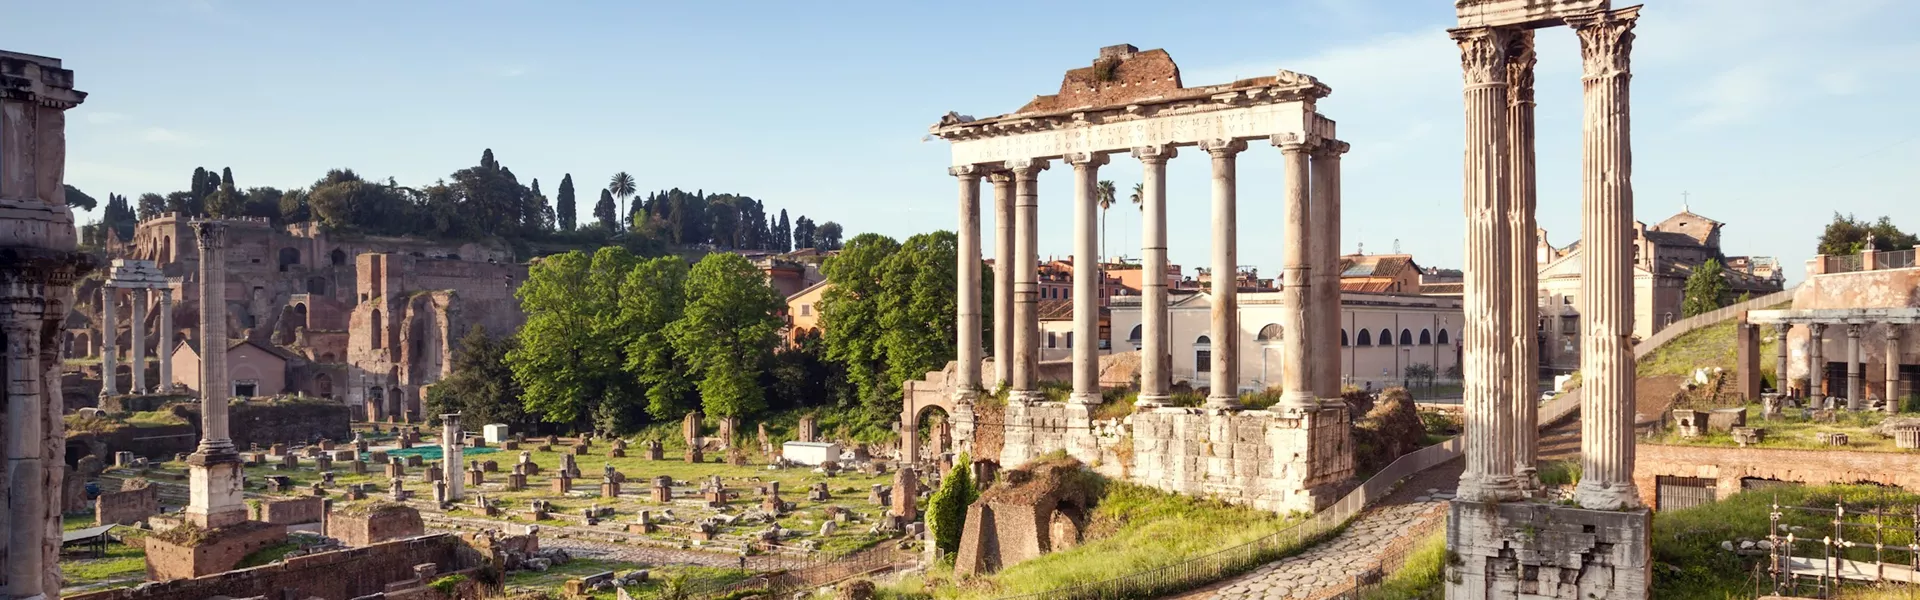 The Roman Forum Rome Italy 10